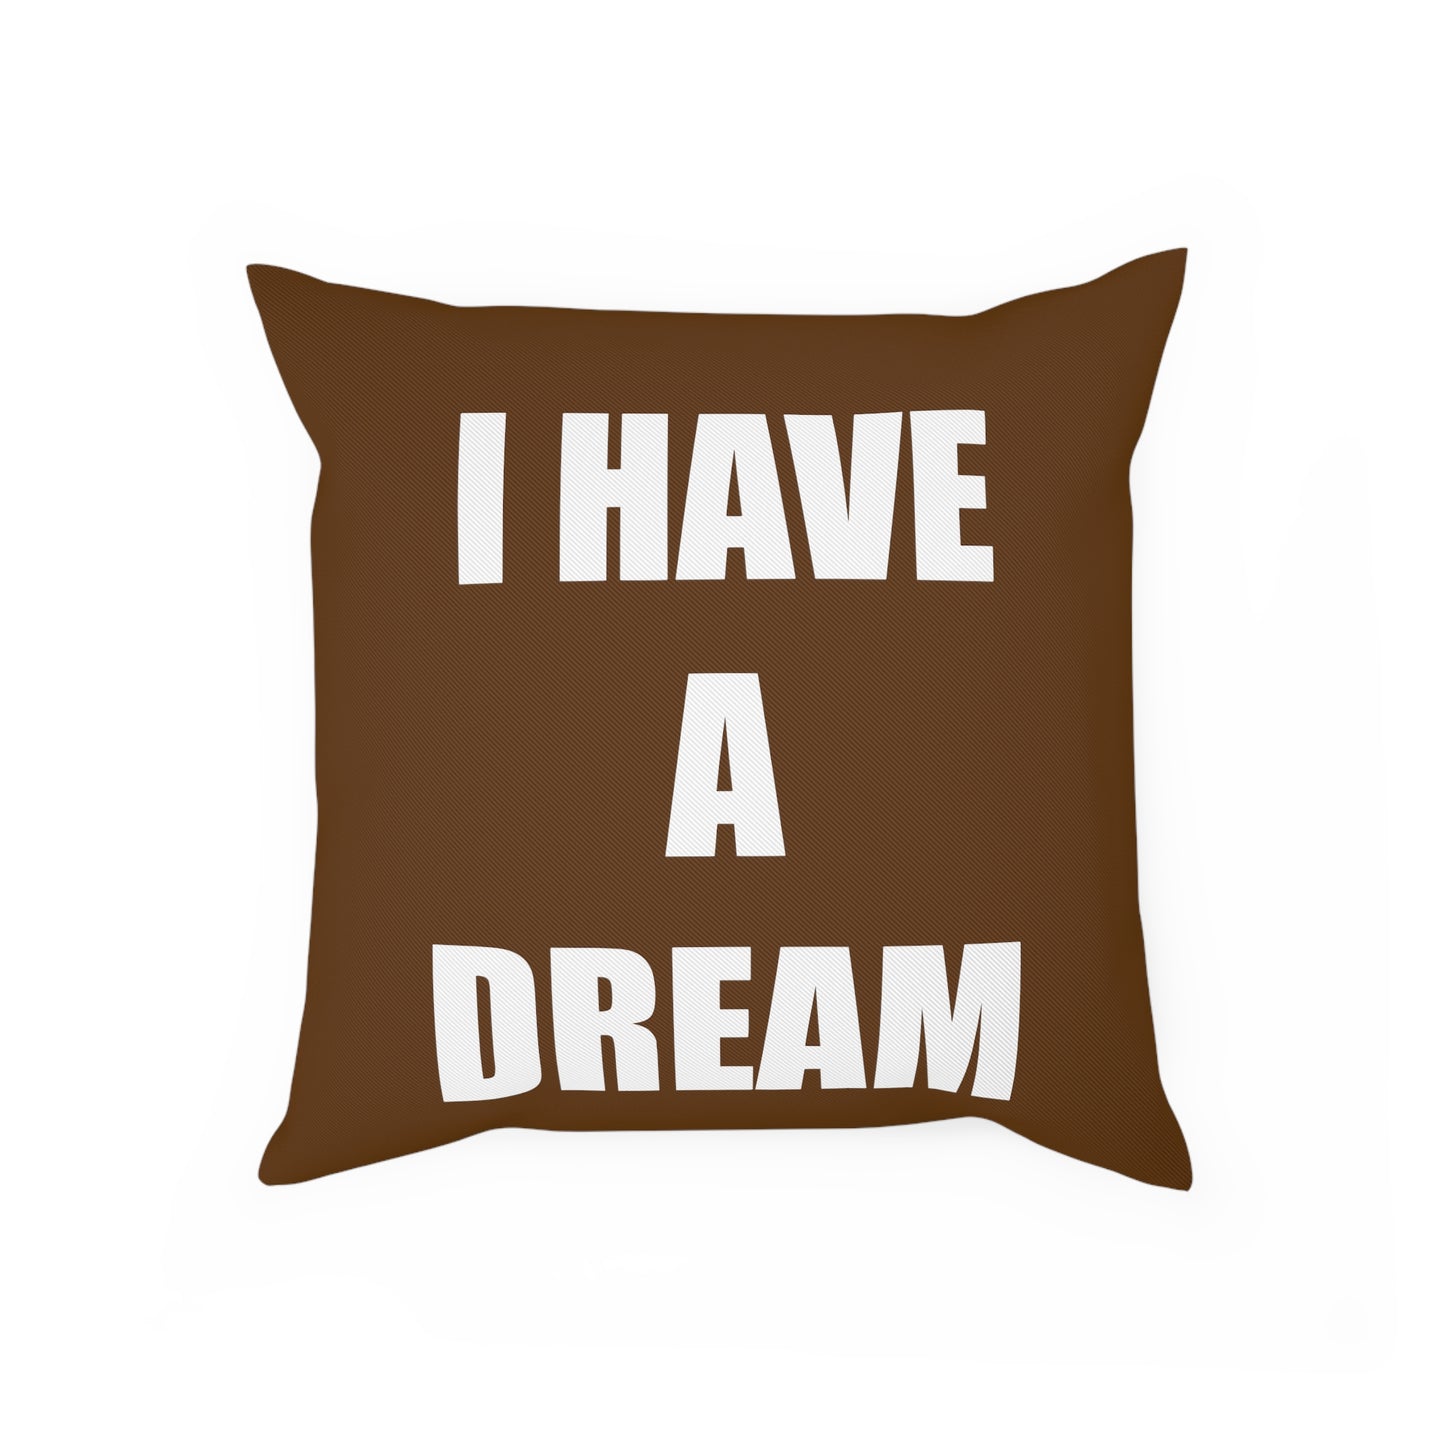 Cinnamon "I HAVE A DREAM" Cushion